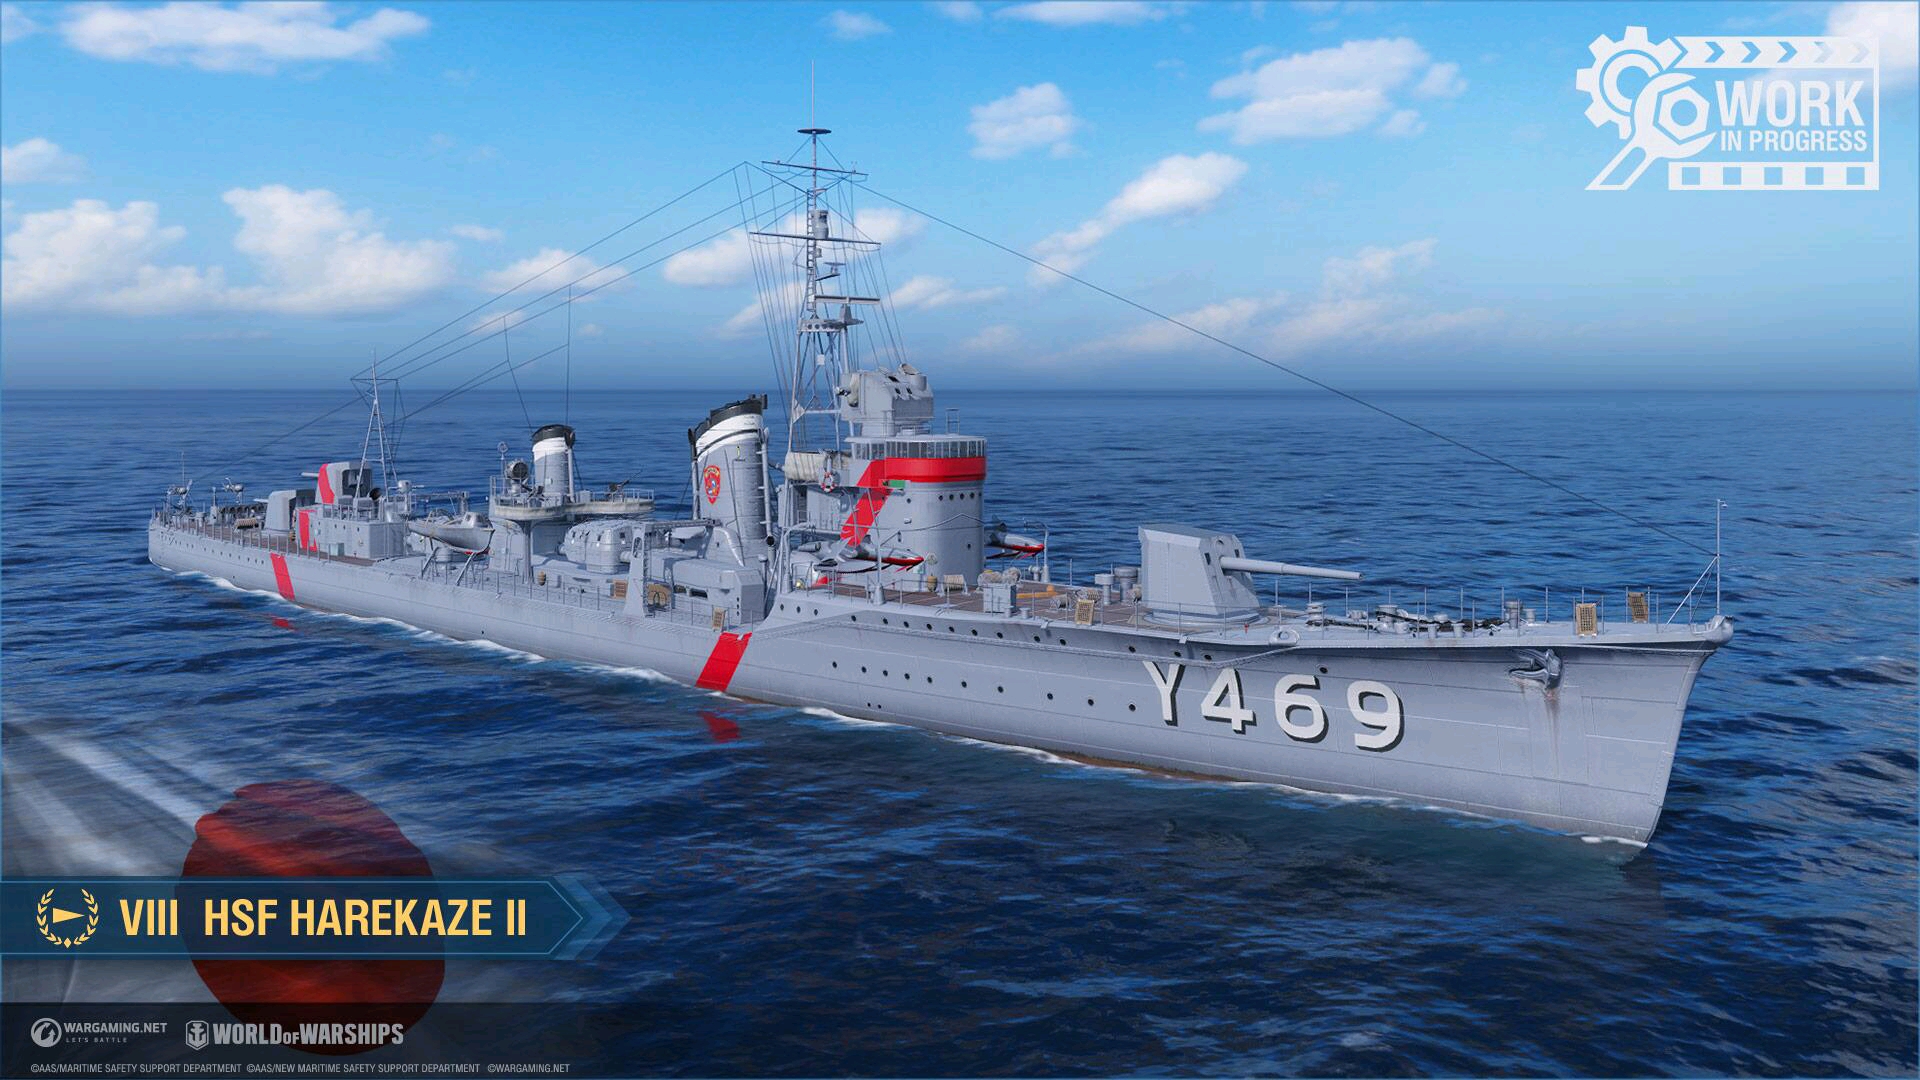 游戏中将添加以下项目:日本第八级驱逐舰hsf harekaze ii,最初被试